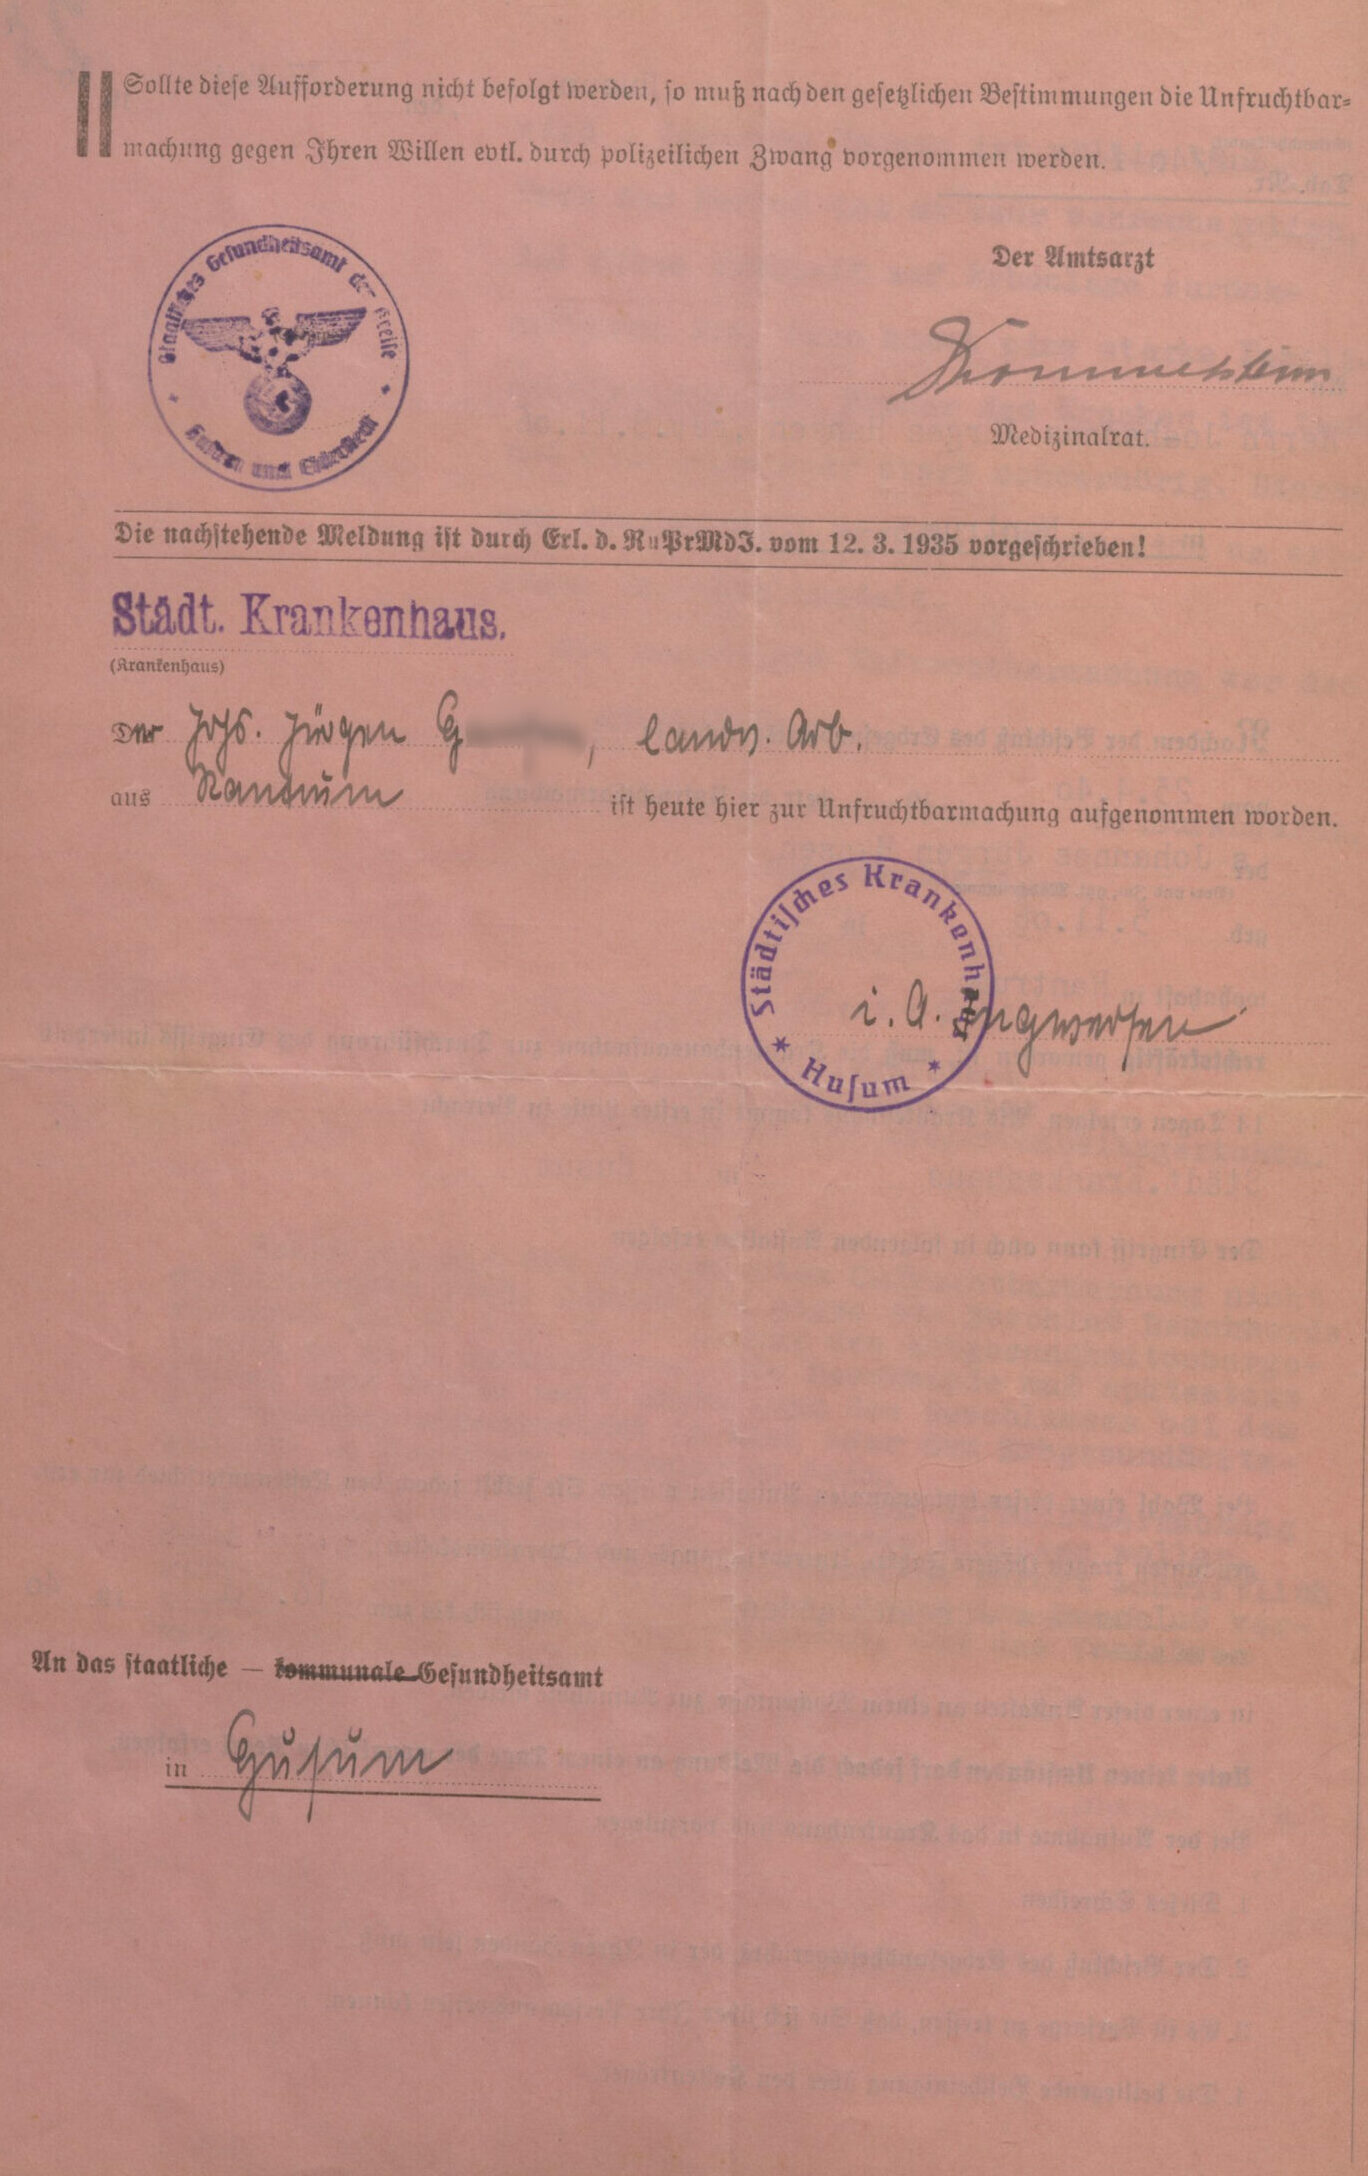 Am 27. Mai 1940 wurde Johannes H. von Amtsarzt Hommelsheim aufgefordert, sich bis binnen 14 Tagen im Städtischen Krankenhaus in Husum zur Unfruchtbarmachung aufnehmen zu lassen. Als Ende der Frist wurde der 10. Mai 1940 eingetragen, der zum Zeitpunkt des Schreibens bereits verstrichen war. Auf der Rückseite des Formulars wurde angekündigt: „Sollte diese Aufforderung nicht befolgt werden, so muß nach den gesetzlichen Bestimmungen die Unfruchtbarmachung gegen Ihren Willen evtl. durch polizeilichen Zwang vorgenommen werden.“ [Kreisarchiv Nordfriesland]